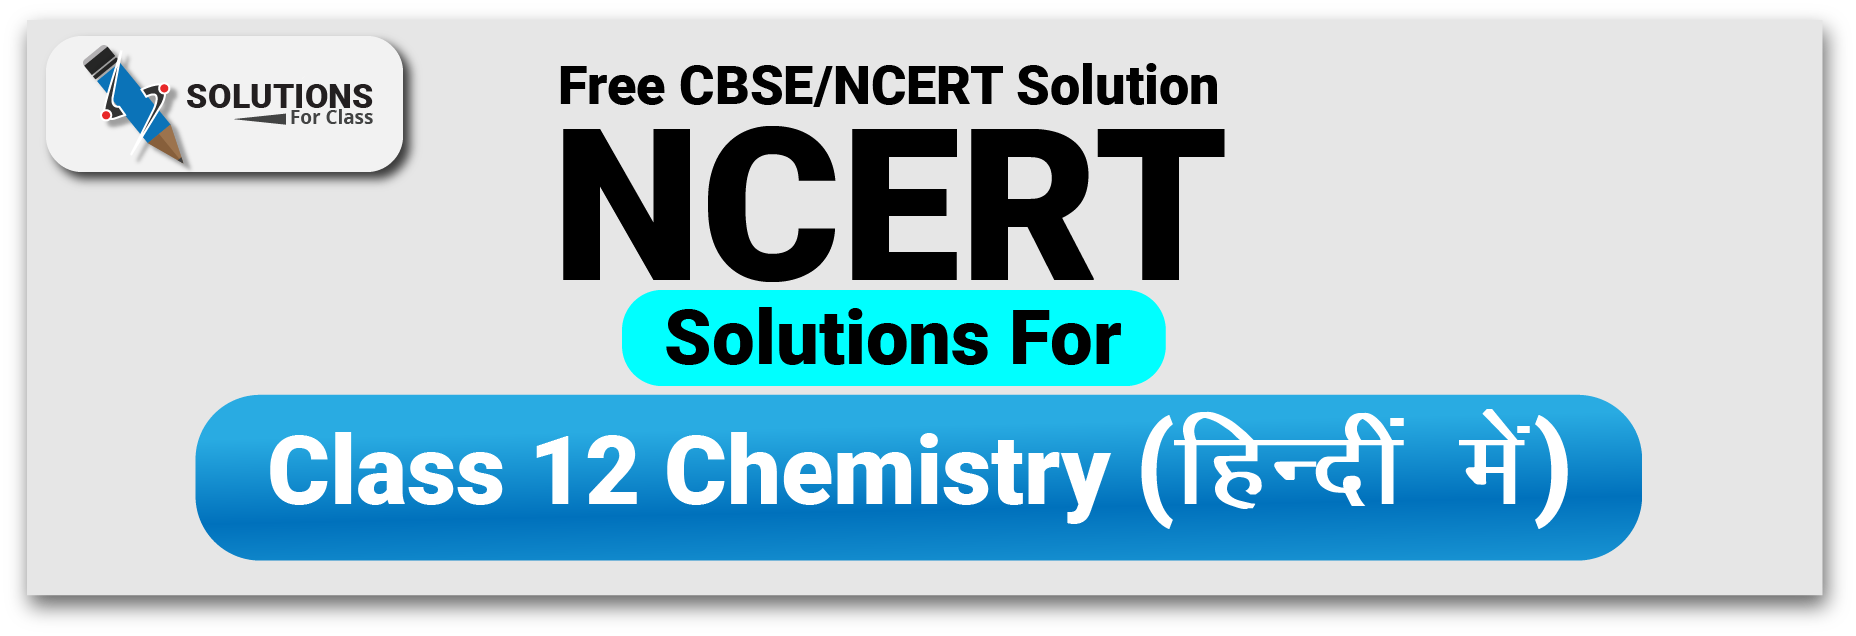 NCERT Solutions Class 12 Chemistry in Hindi (कक्षा 12 रसायन विज्ञान हिंदी में)